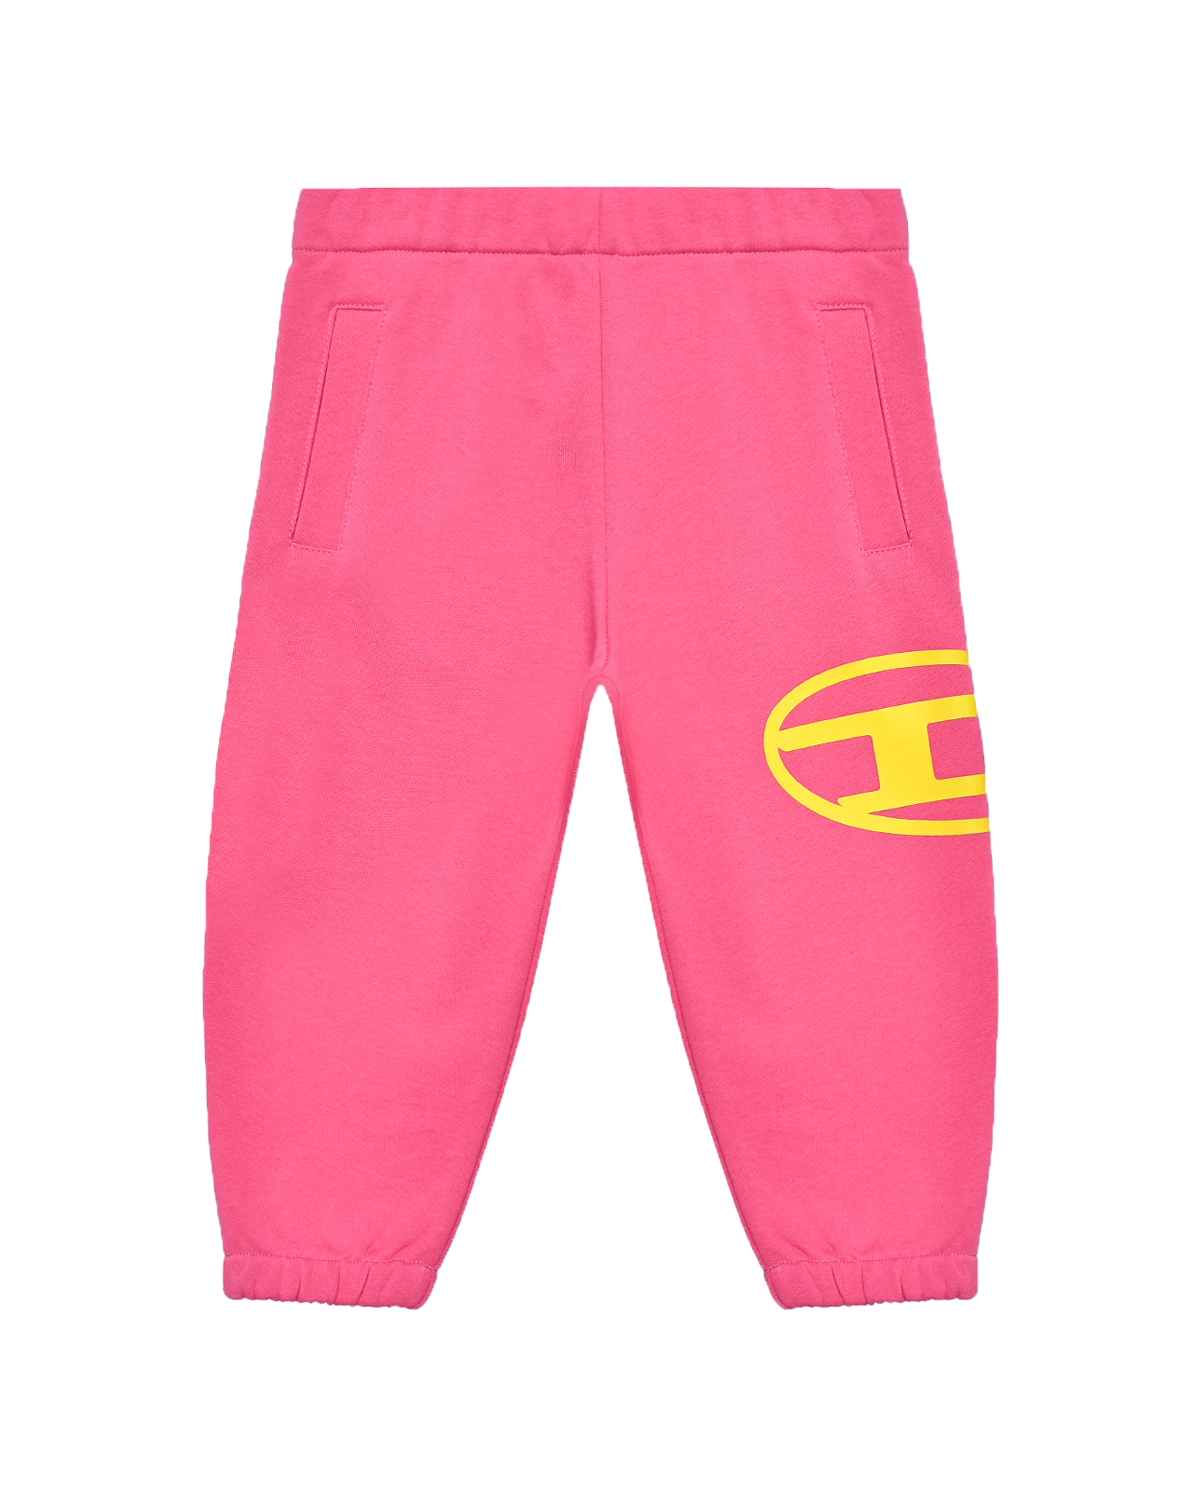 Спортивные брюки с поясом на резинке, розовые Diesel спортивные брюки с поясом на резинке diesel